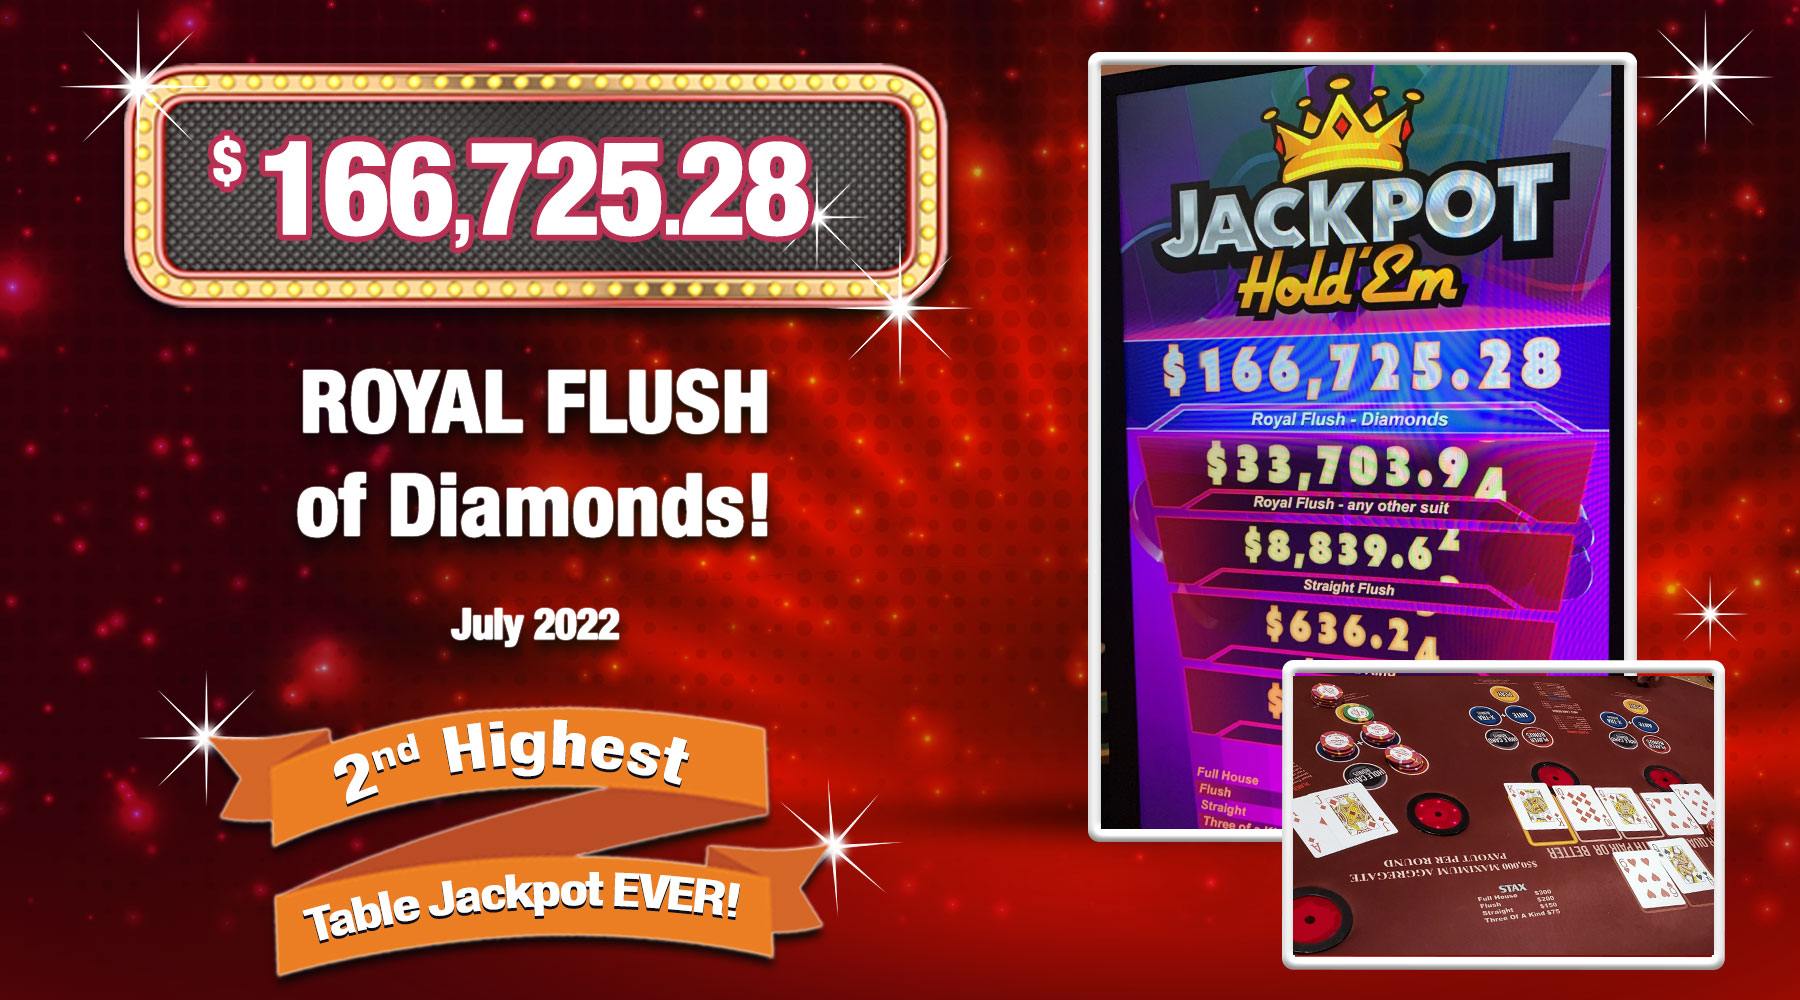 Royal Flush - $166,725.28 Table Games Progressive JACKPOT